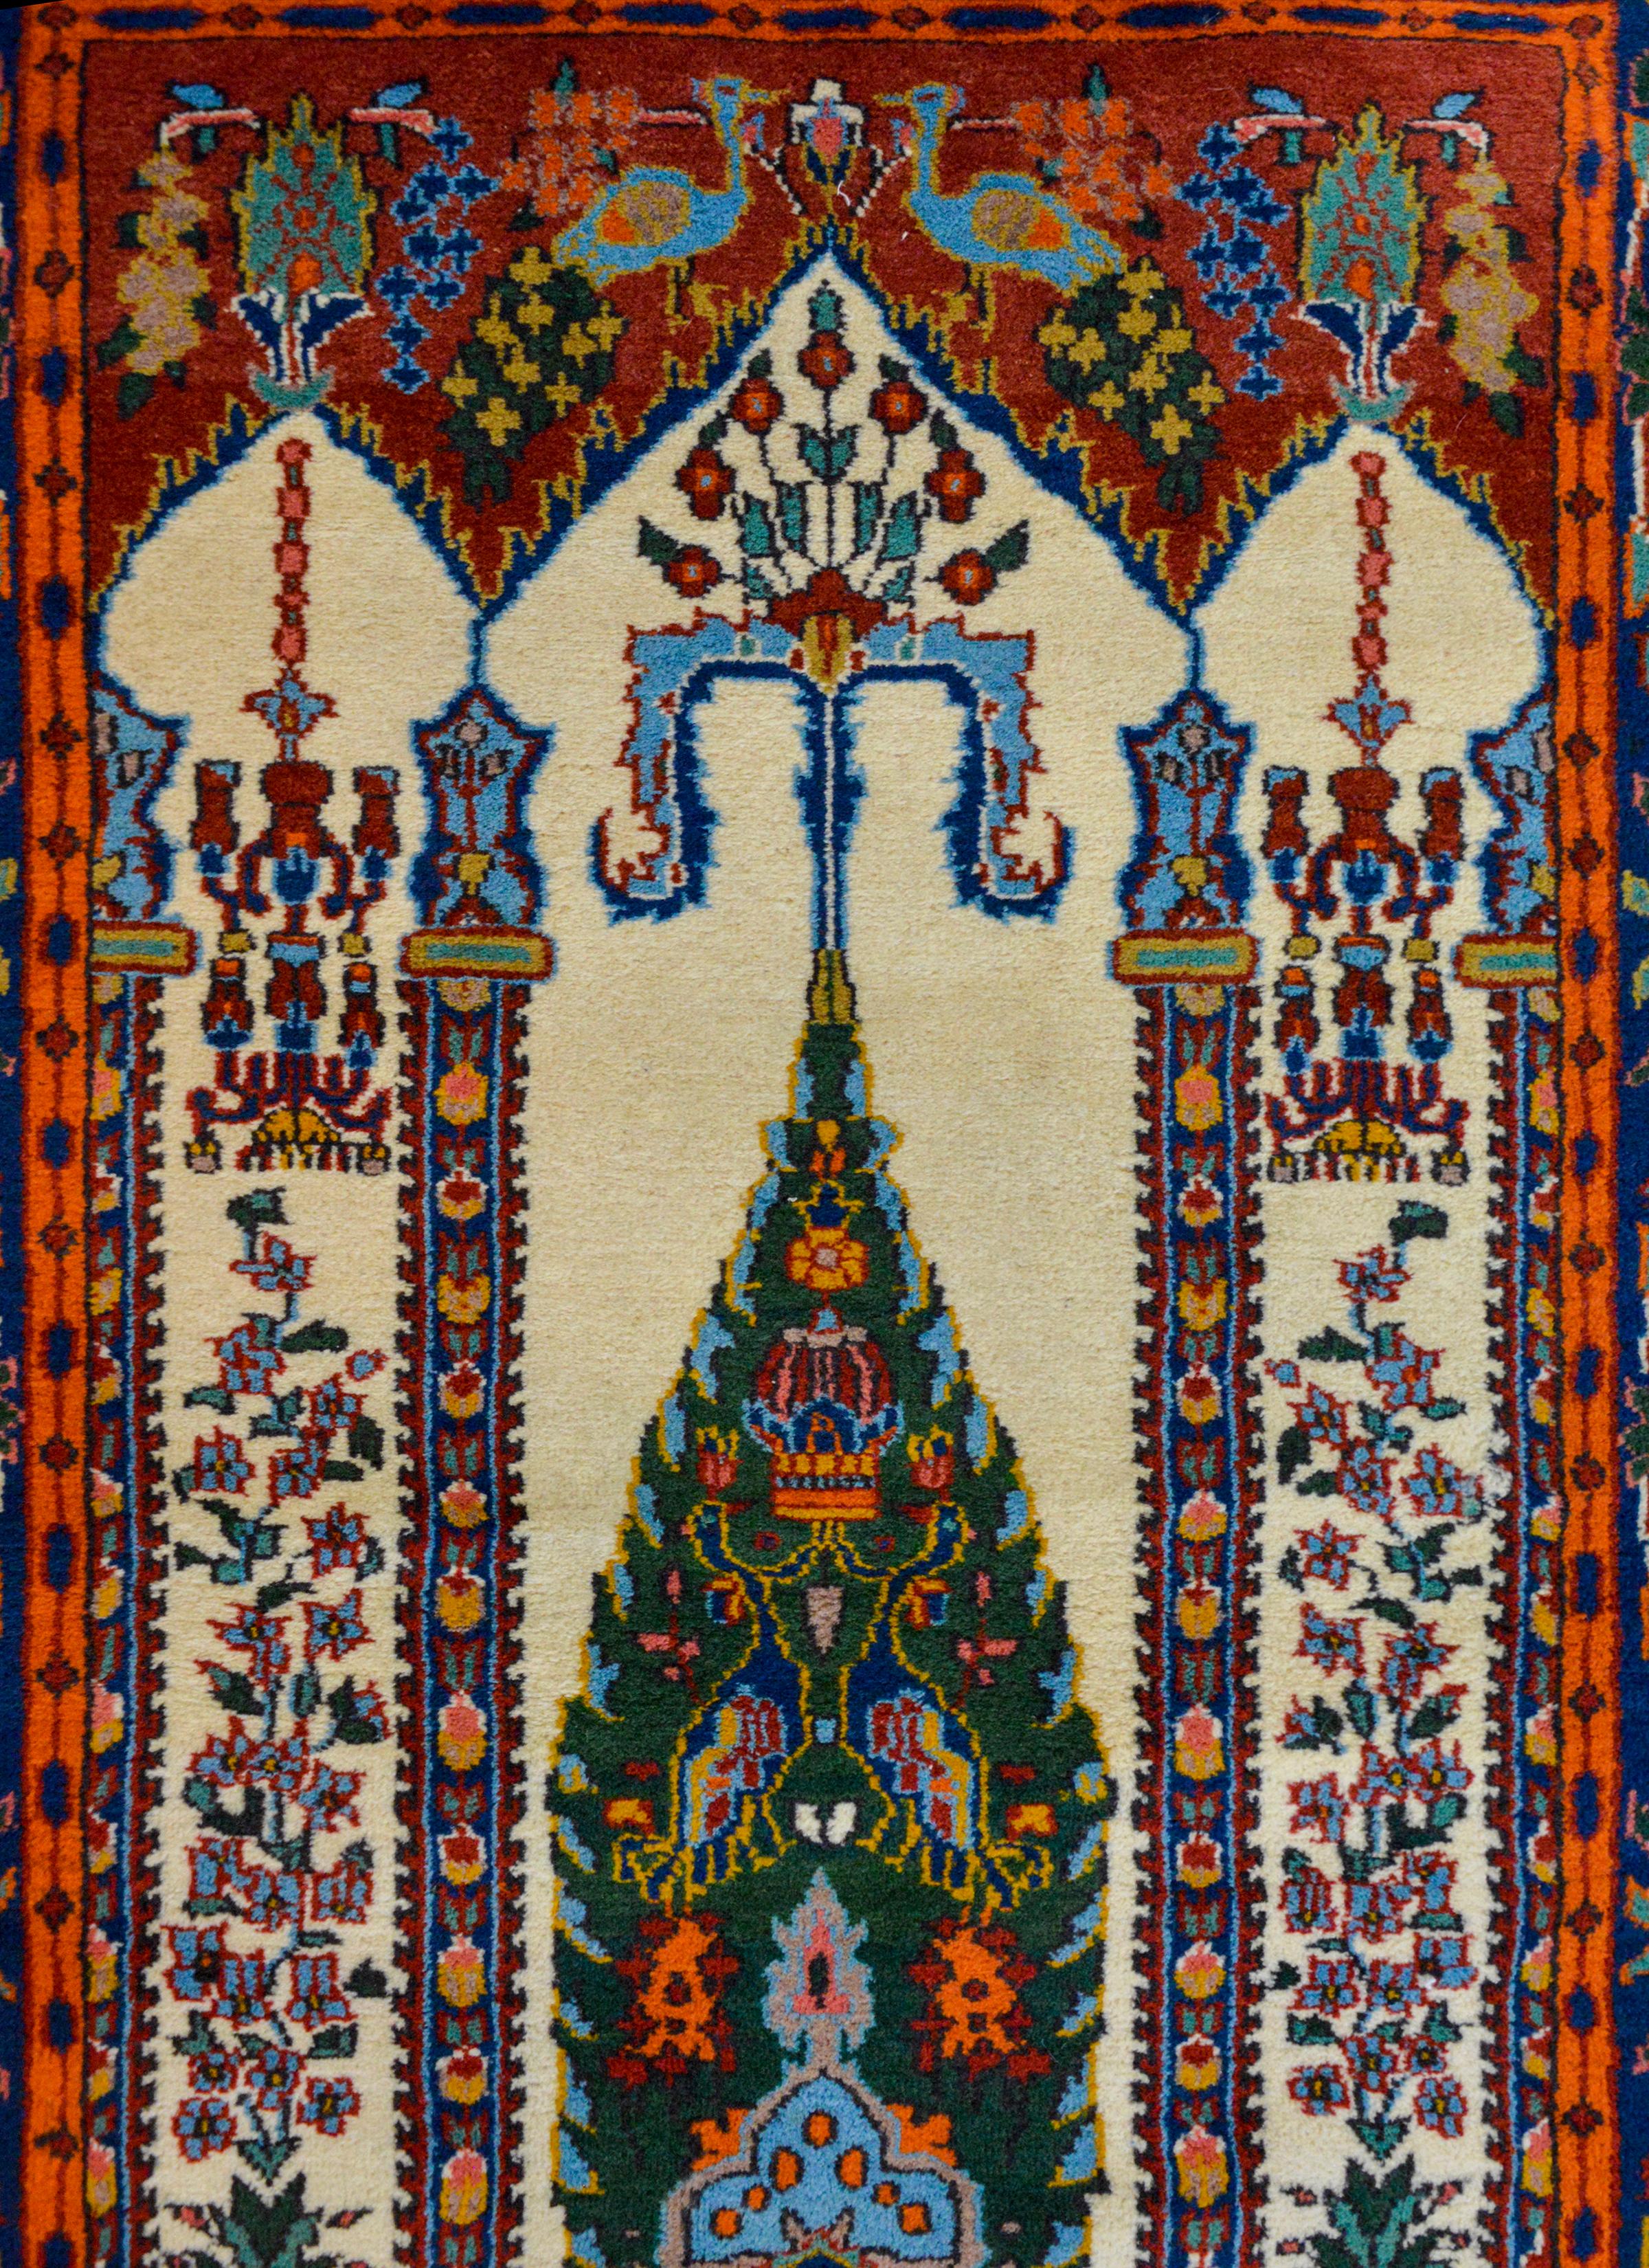 Un extraordinaire tapis de prière indien vintage de style Bakhtiari représentant une myriade de fleurs et d'arbres en pot, ainsi que des oiseaux dans un intérieur architectural avec des lustres suspendus. La bordure est merveilleusement expressive